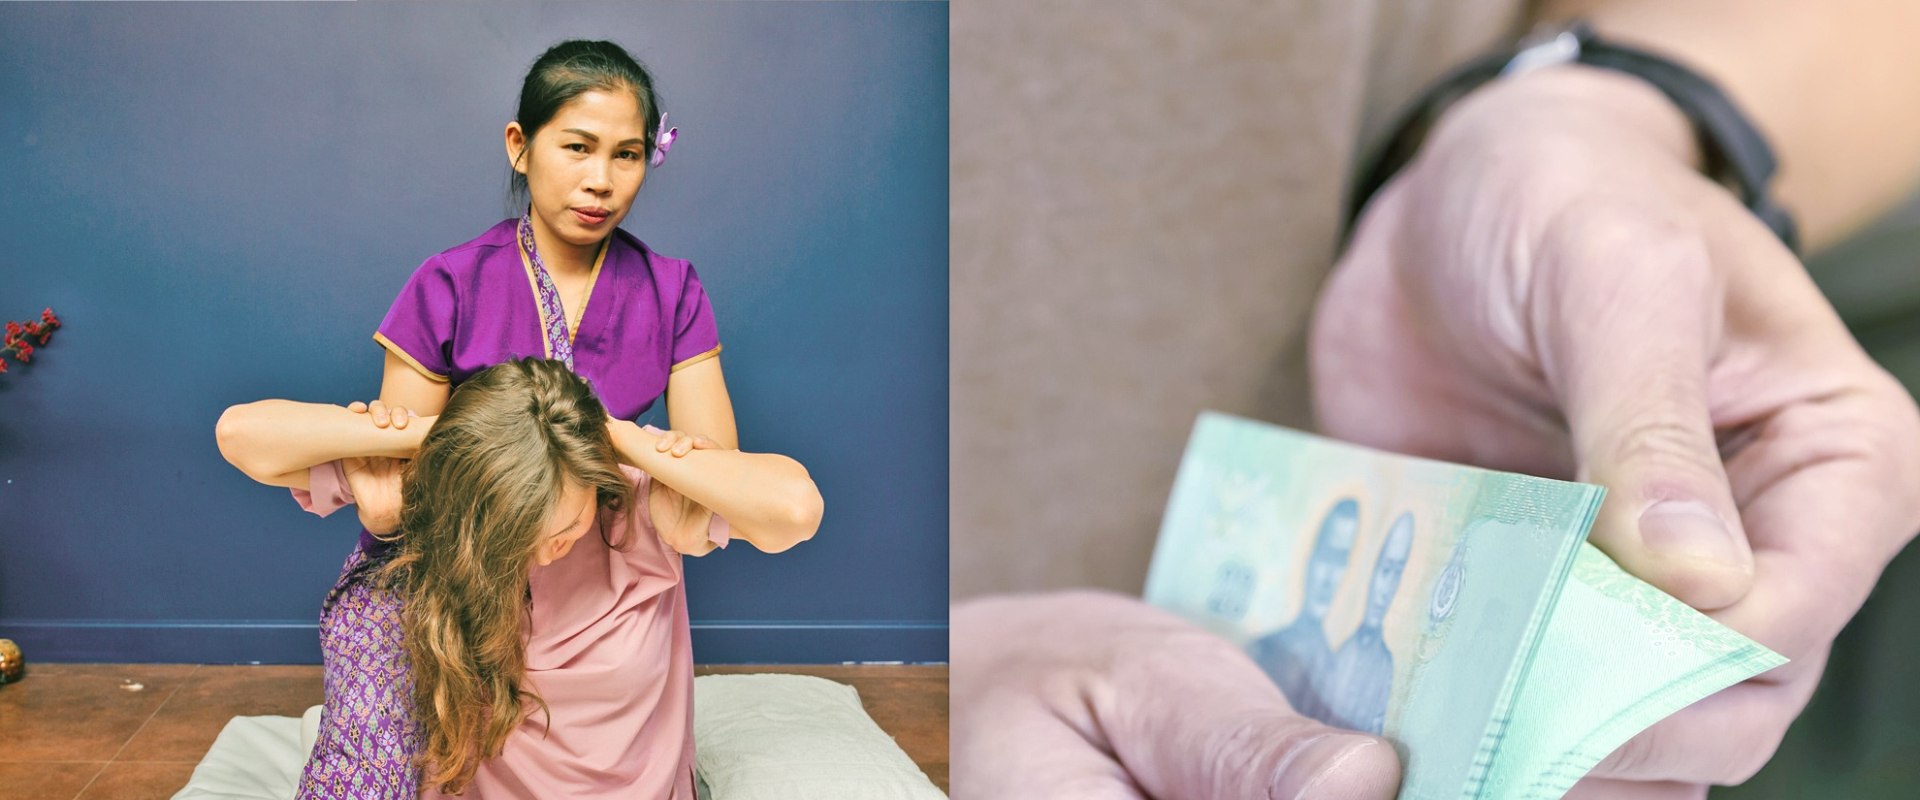 Wie viel kostet eine thailändische massage in bangkok?